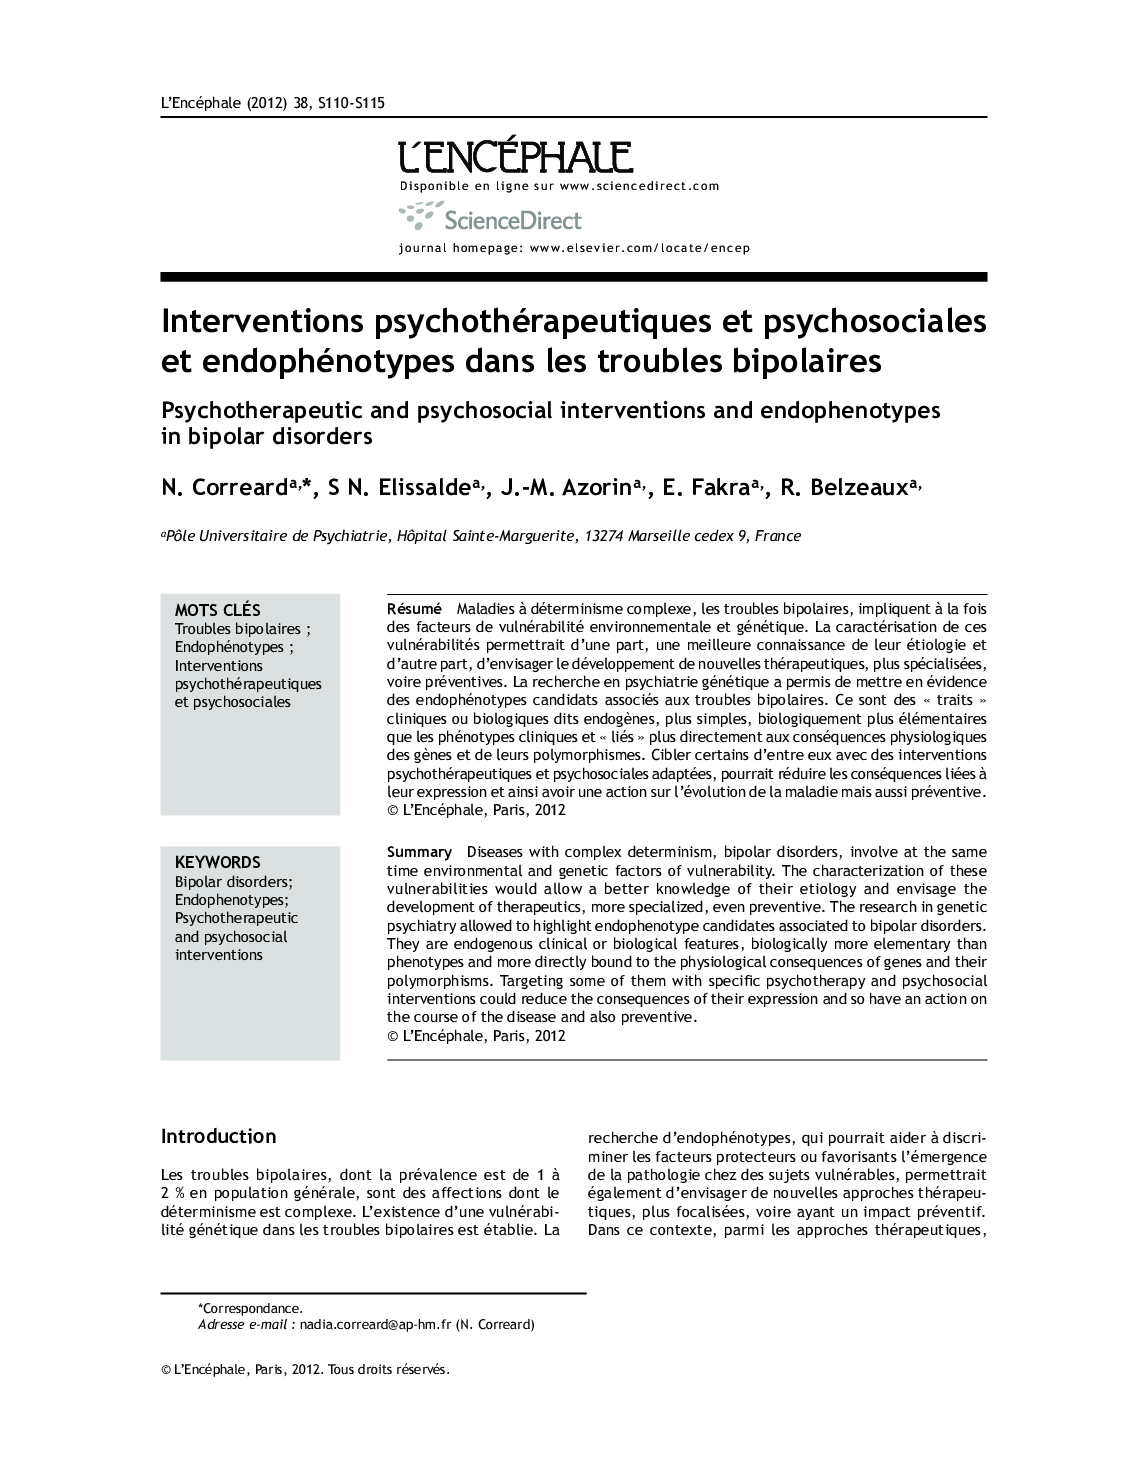 Interventions psychothérapeutiques et psychosociales et endophénotypes dans les troubles bipolaires